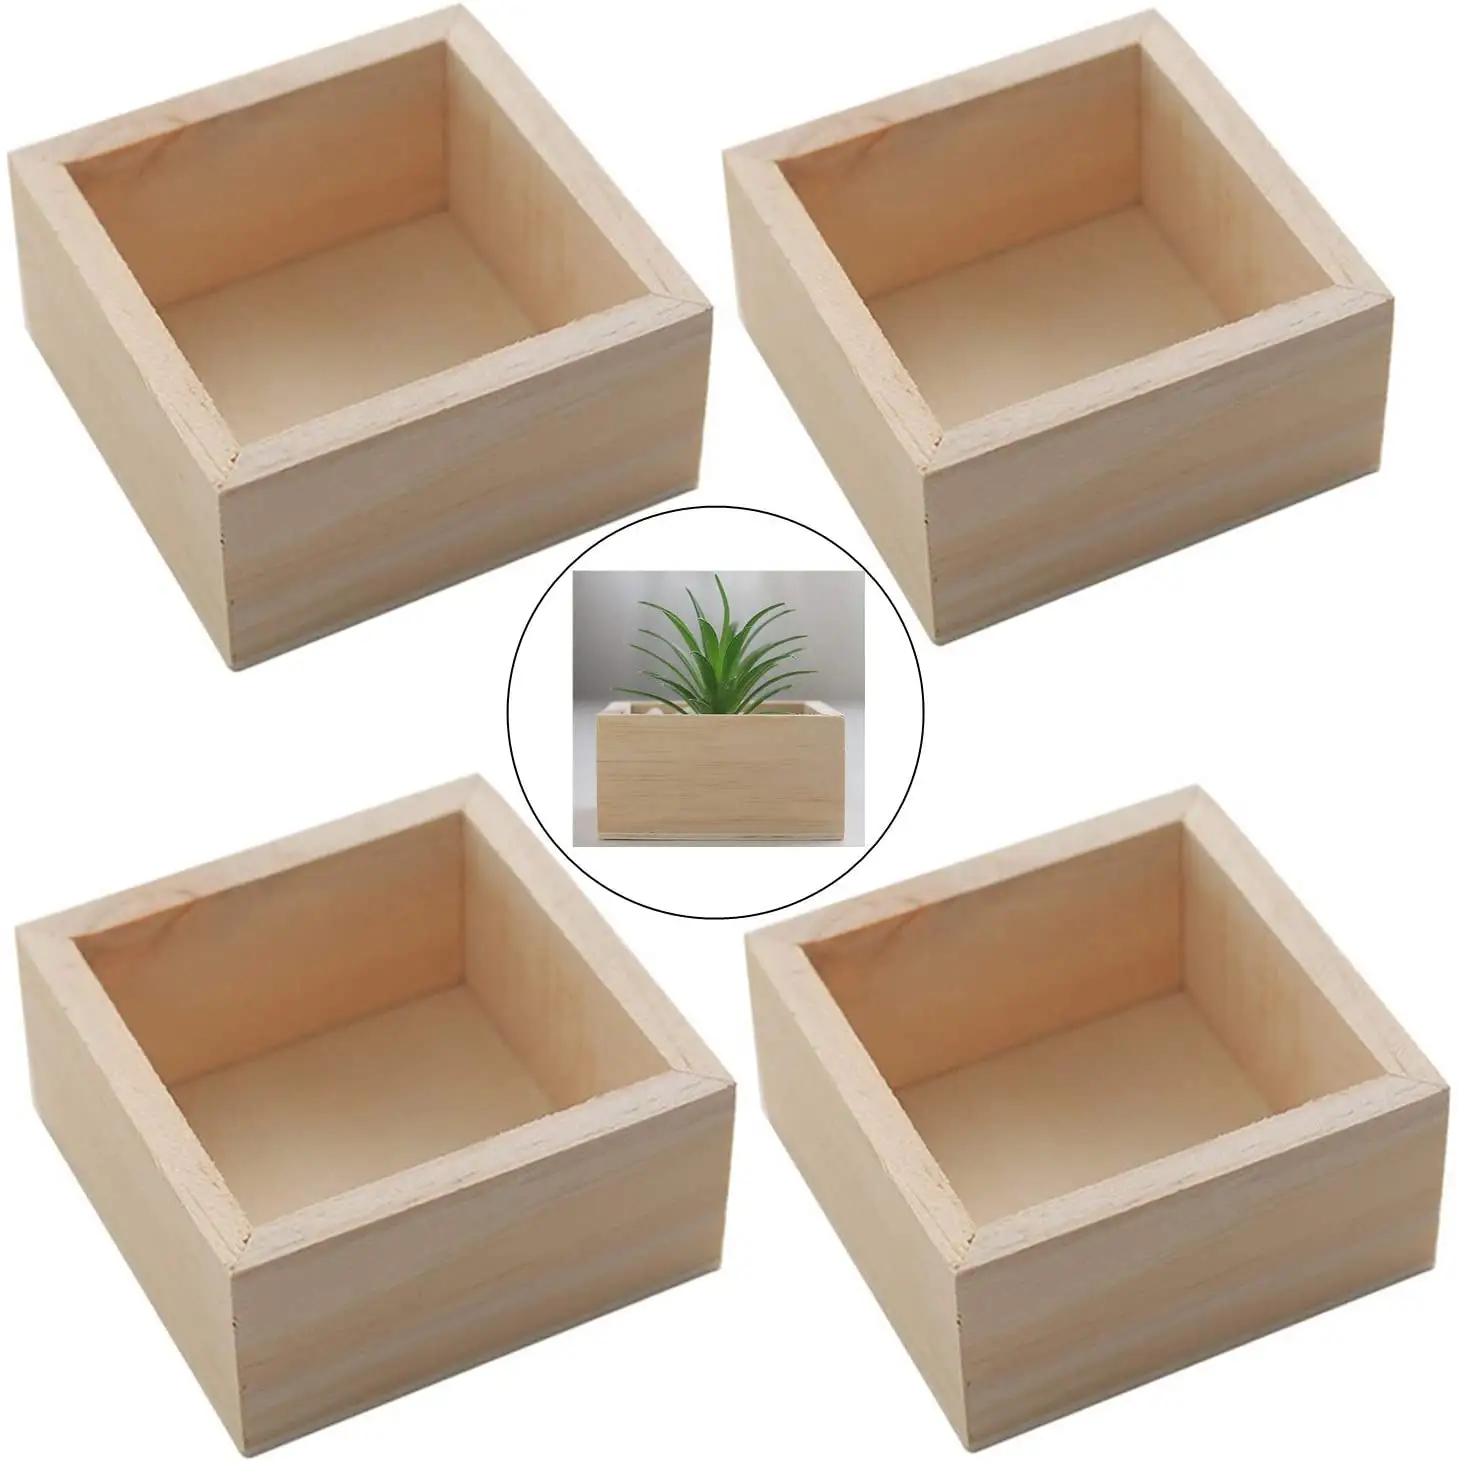 Dimensioni personalizzate Logo quadrato in legno massello profondo Shadow Box Frame piante in vaso Display fiori